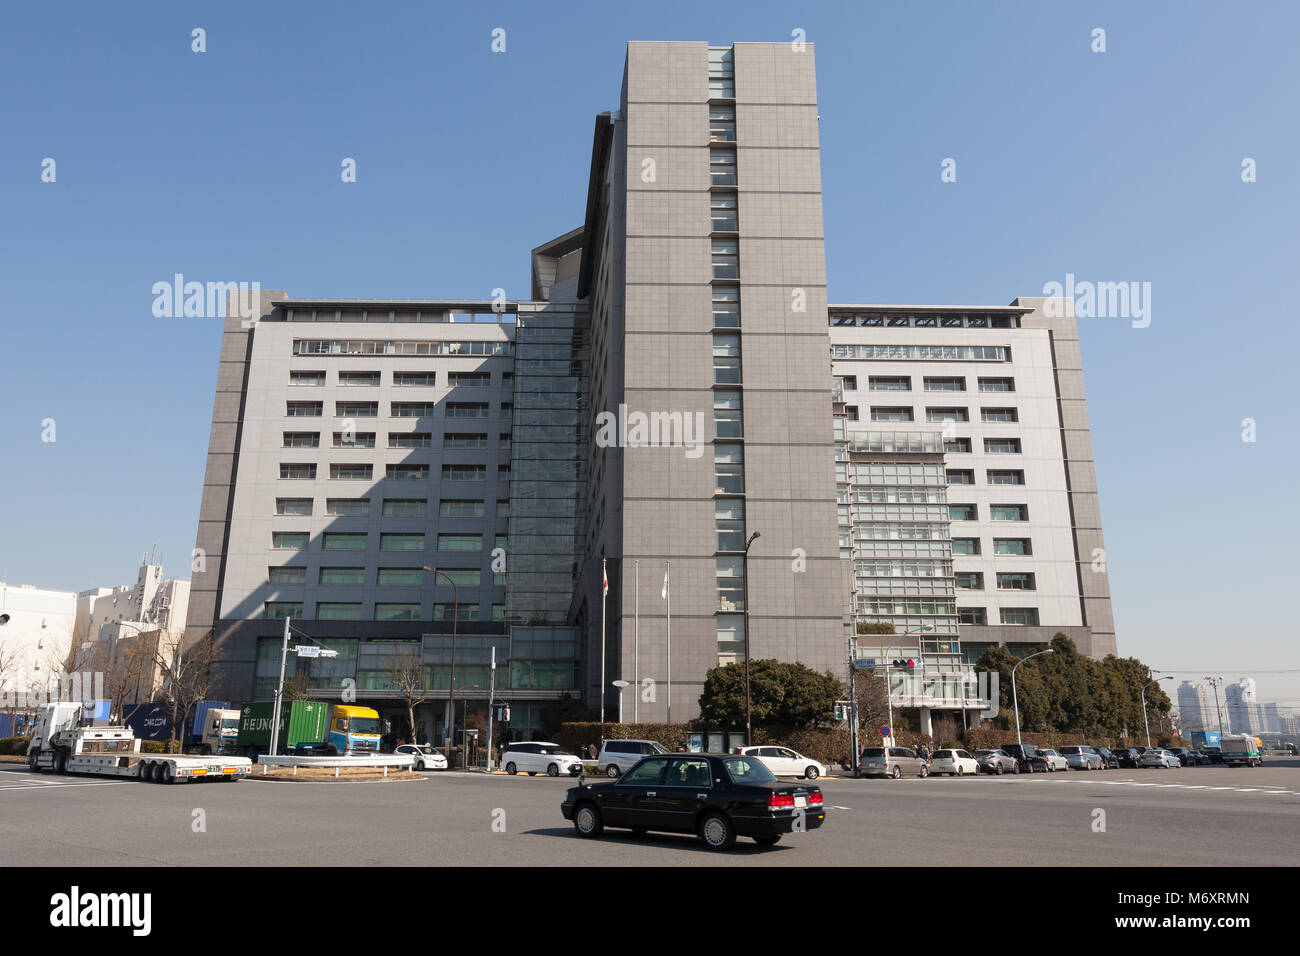 The Tokyo Regional Immigration Bureau Office in Konan (near Shinagawa), Minato Ward, Tokyo, Japan. Stock Photo